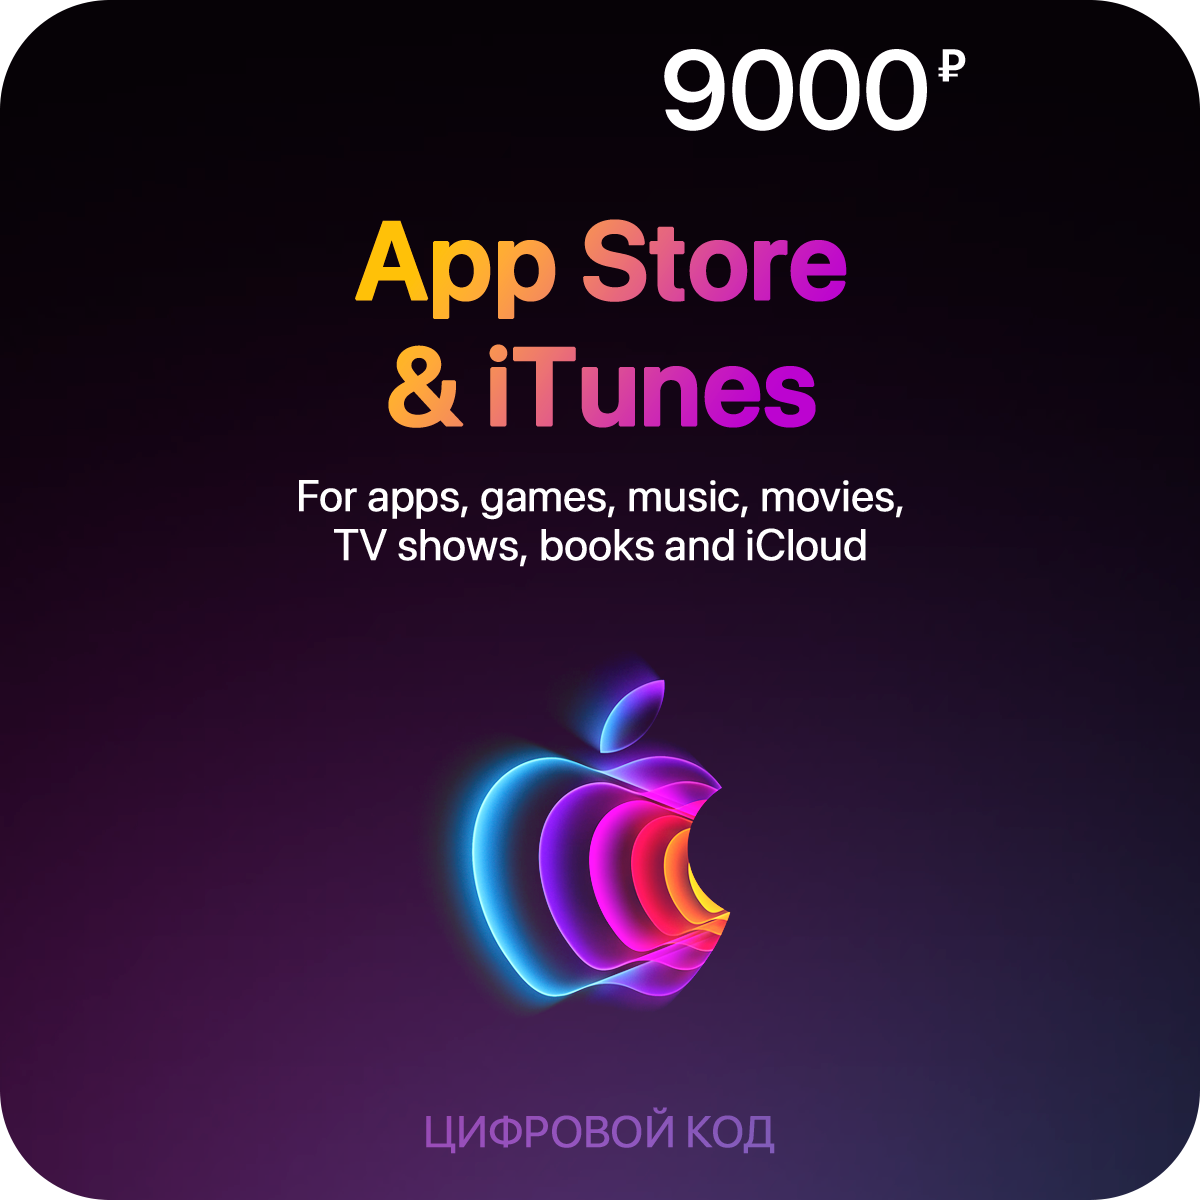 Пополнение счета App Store & iTunes (9000 рублей)